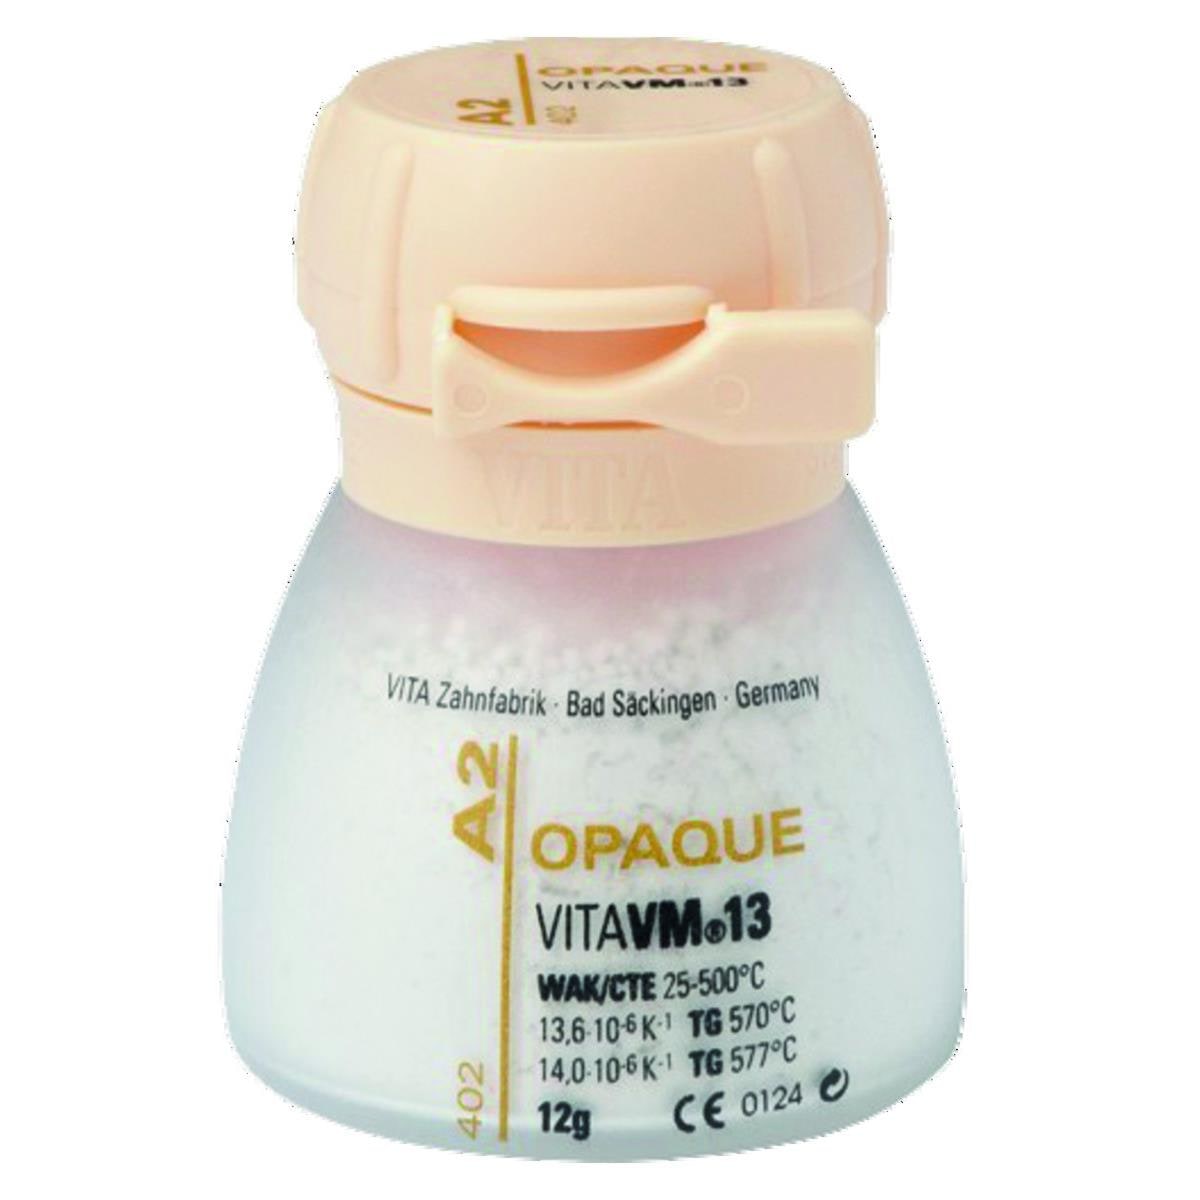 VM13 VITA - Opaque poudre - C3 - Le pot de 12 g